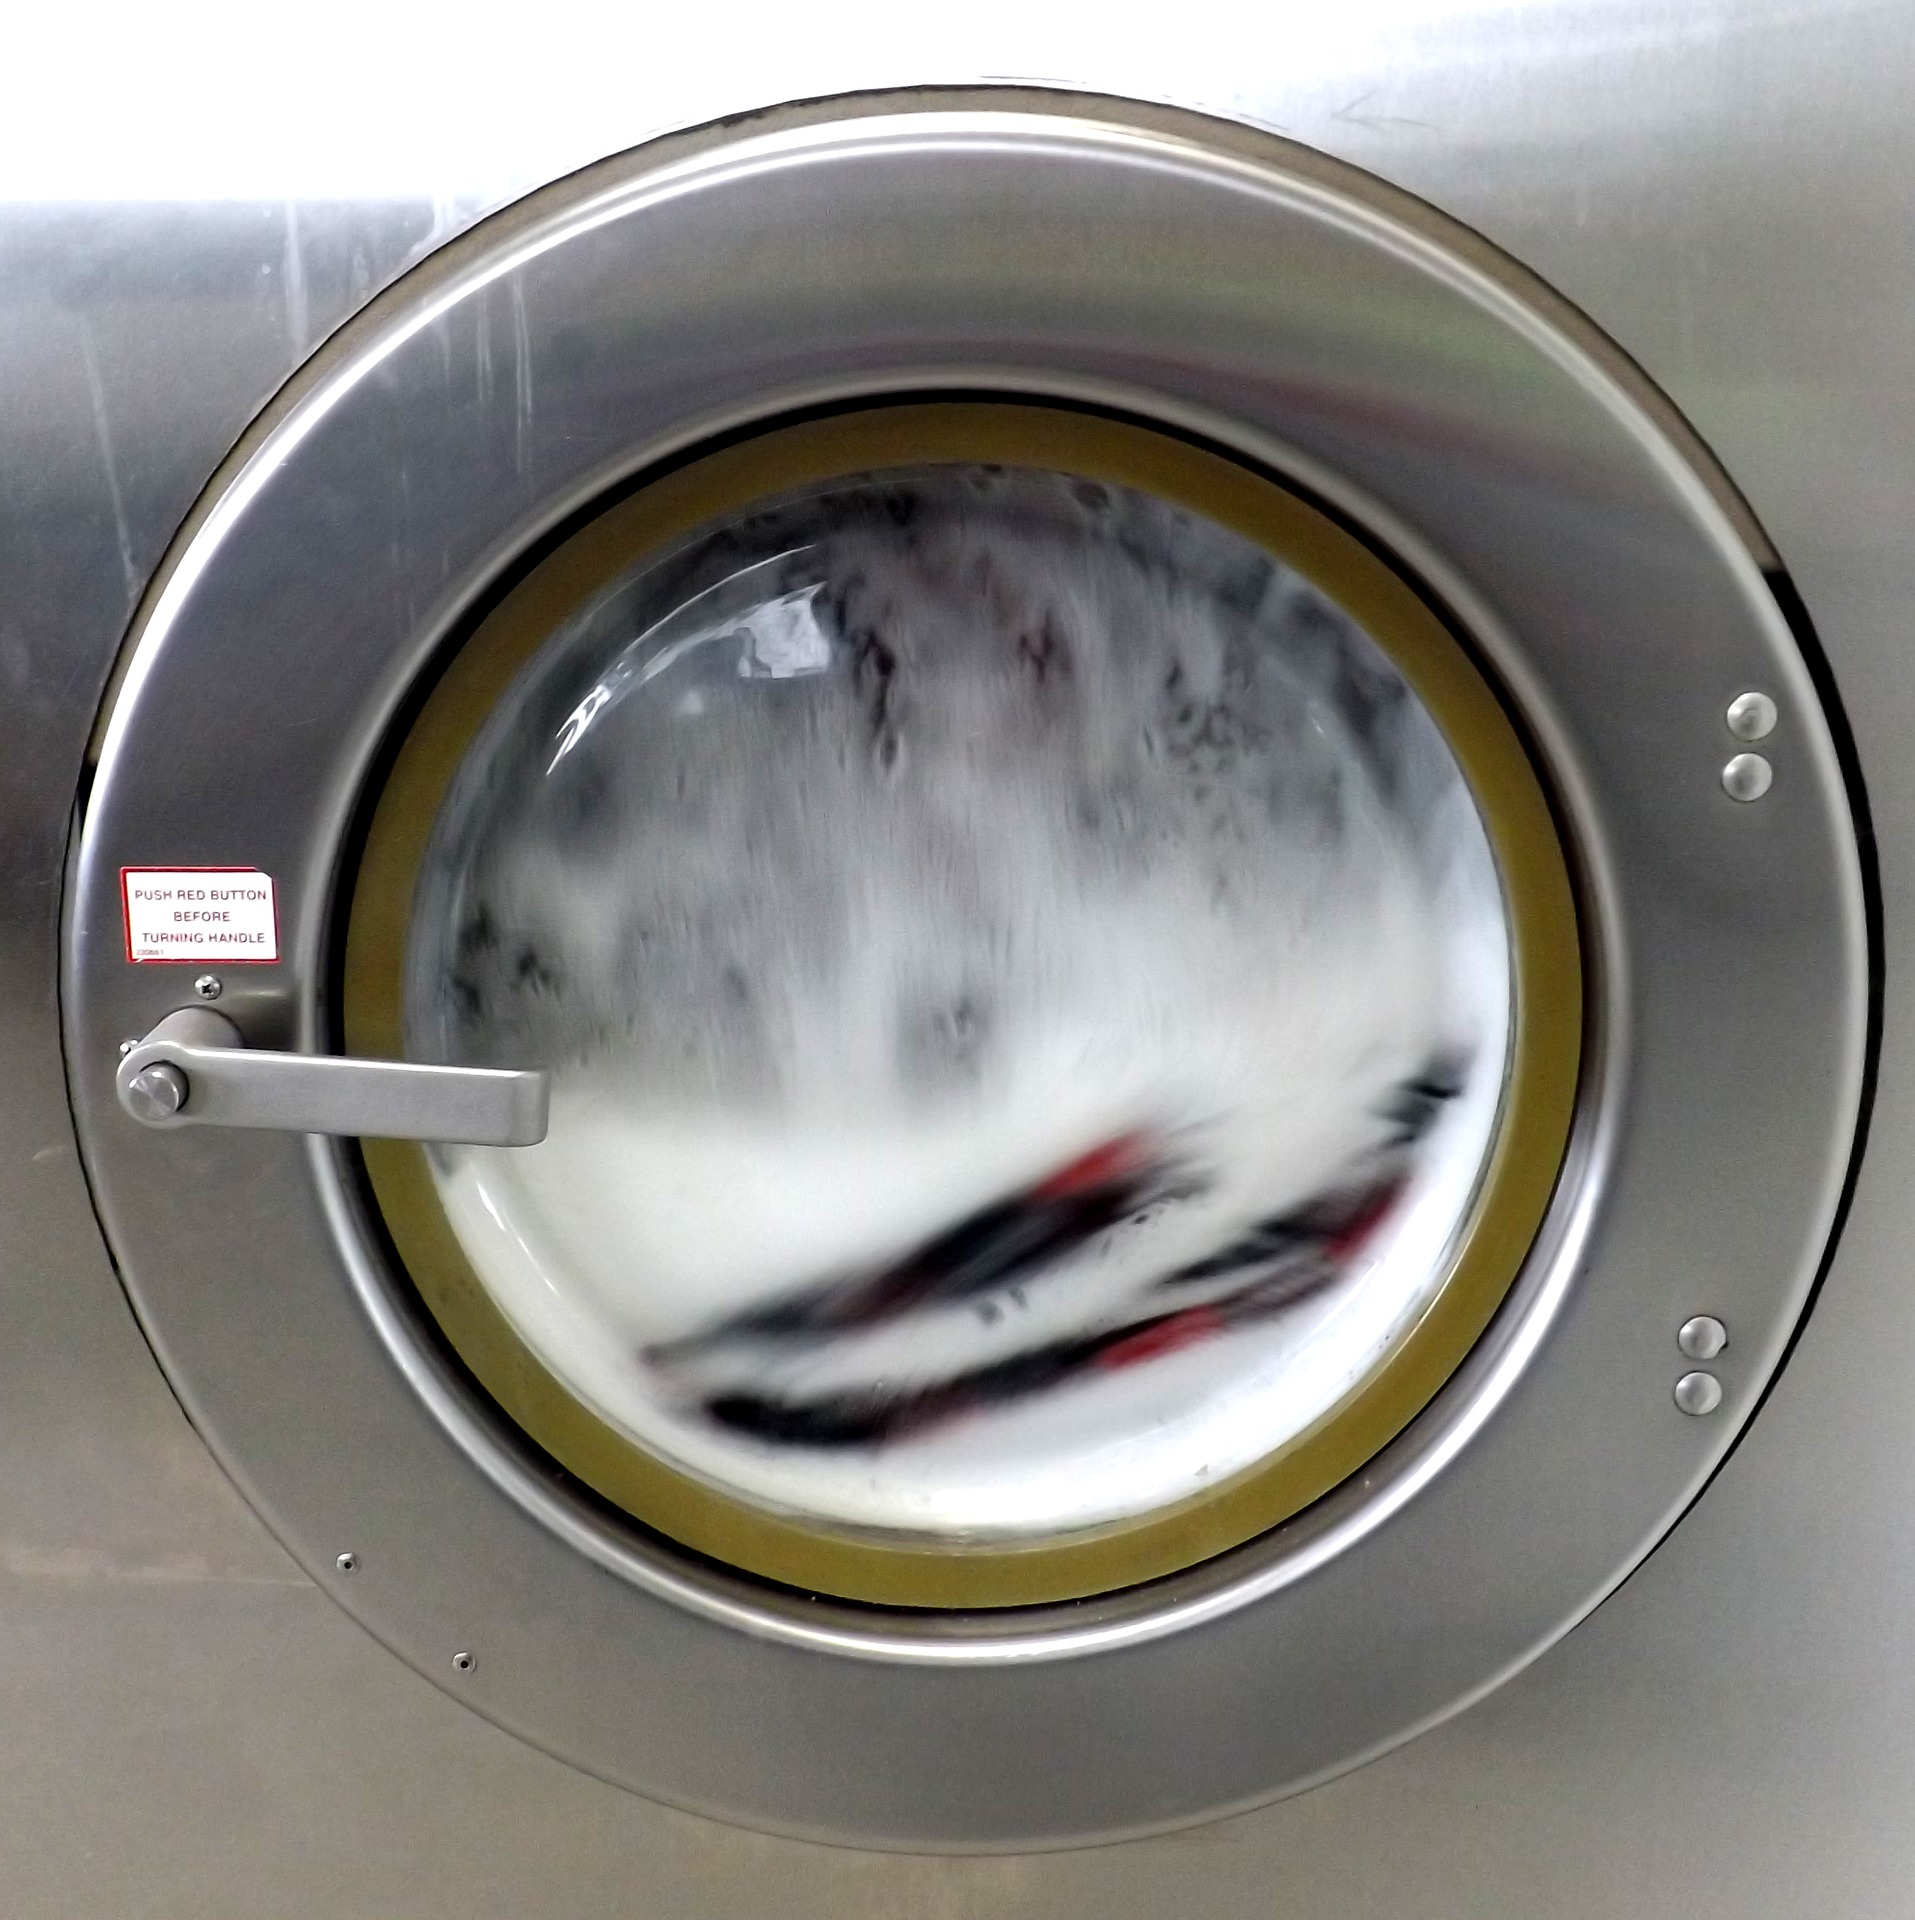 Detergente líquido, en polvo o en cápsulas, ¿cuál es mejor para lavar la  ropa?